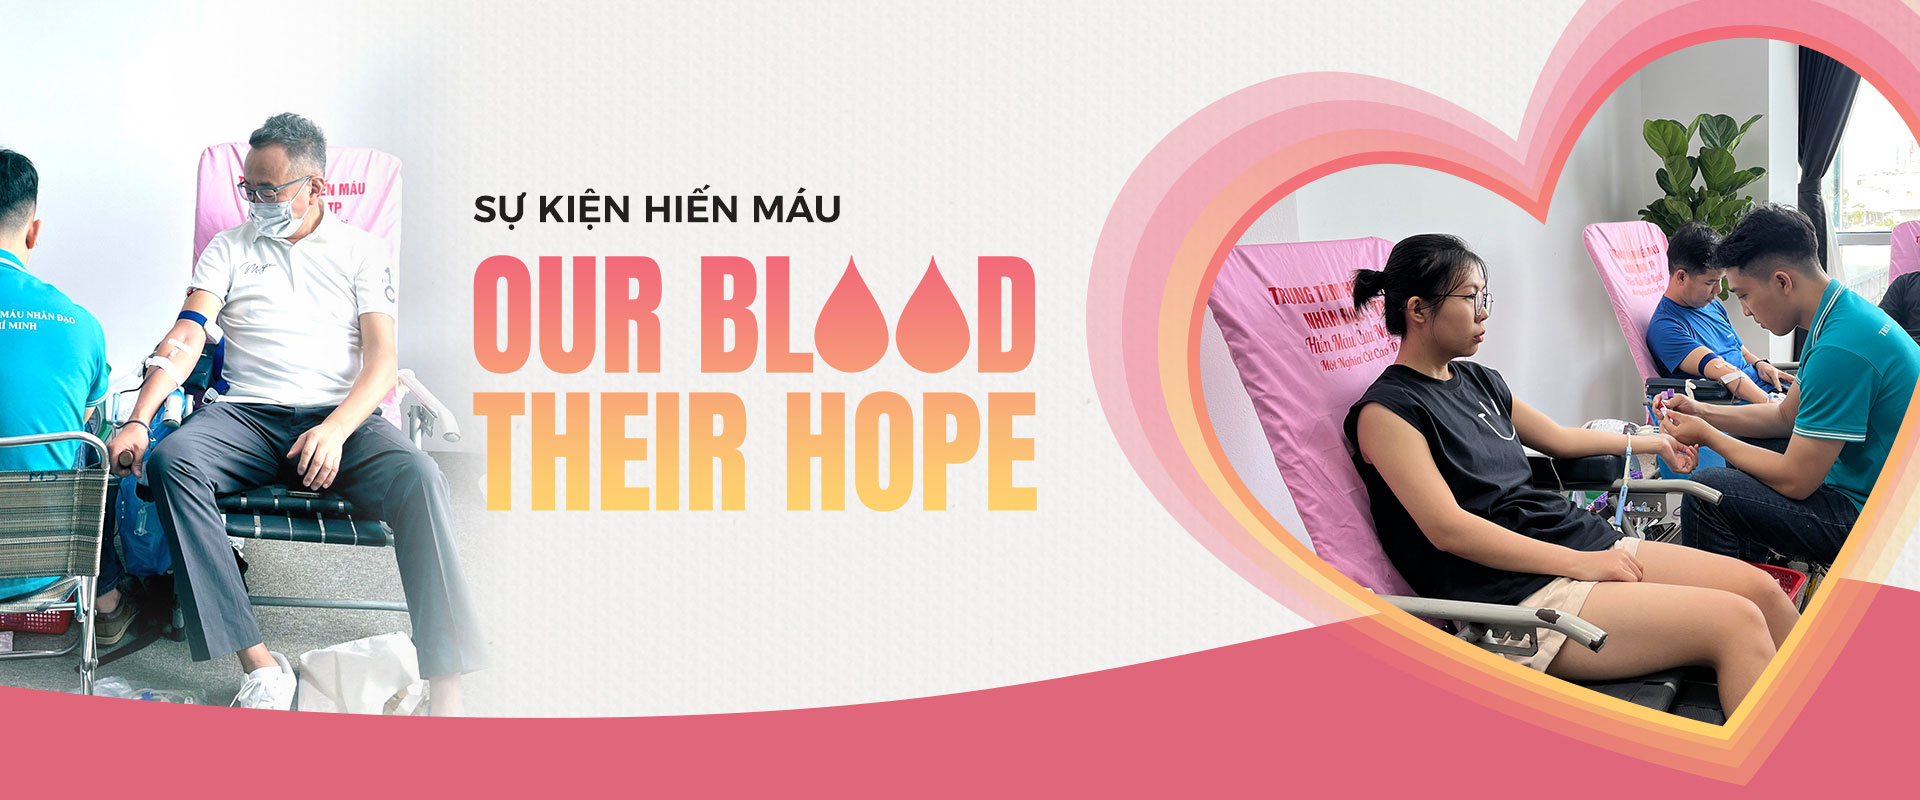 Kilala tiếp nhận hơn 100 đơn vị máu tại sự kiện “Our Blood, Their Hope”.